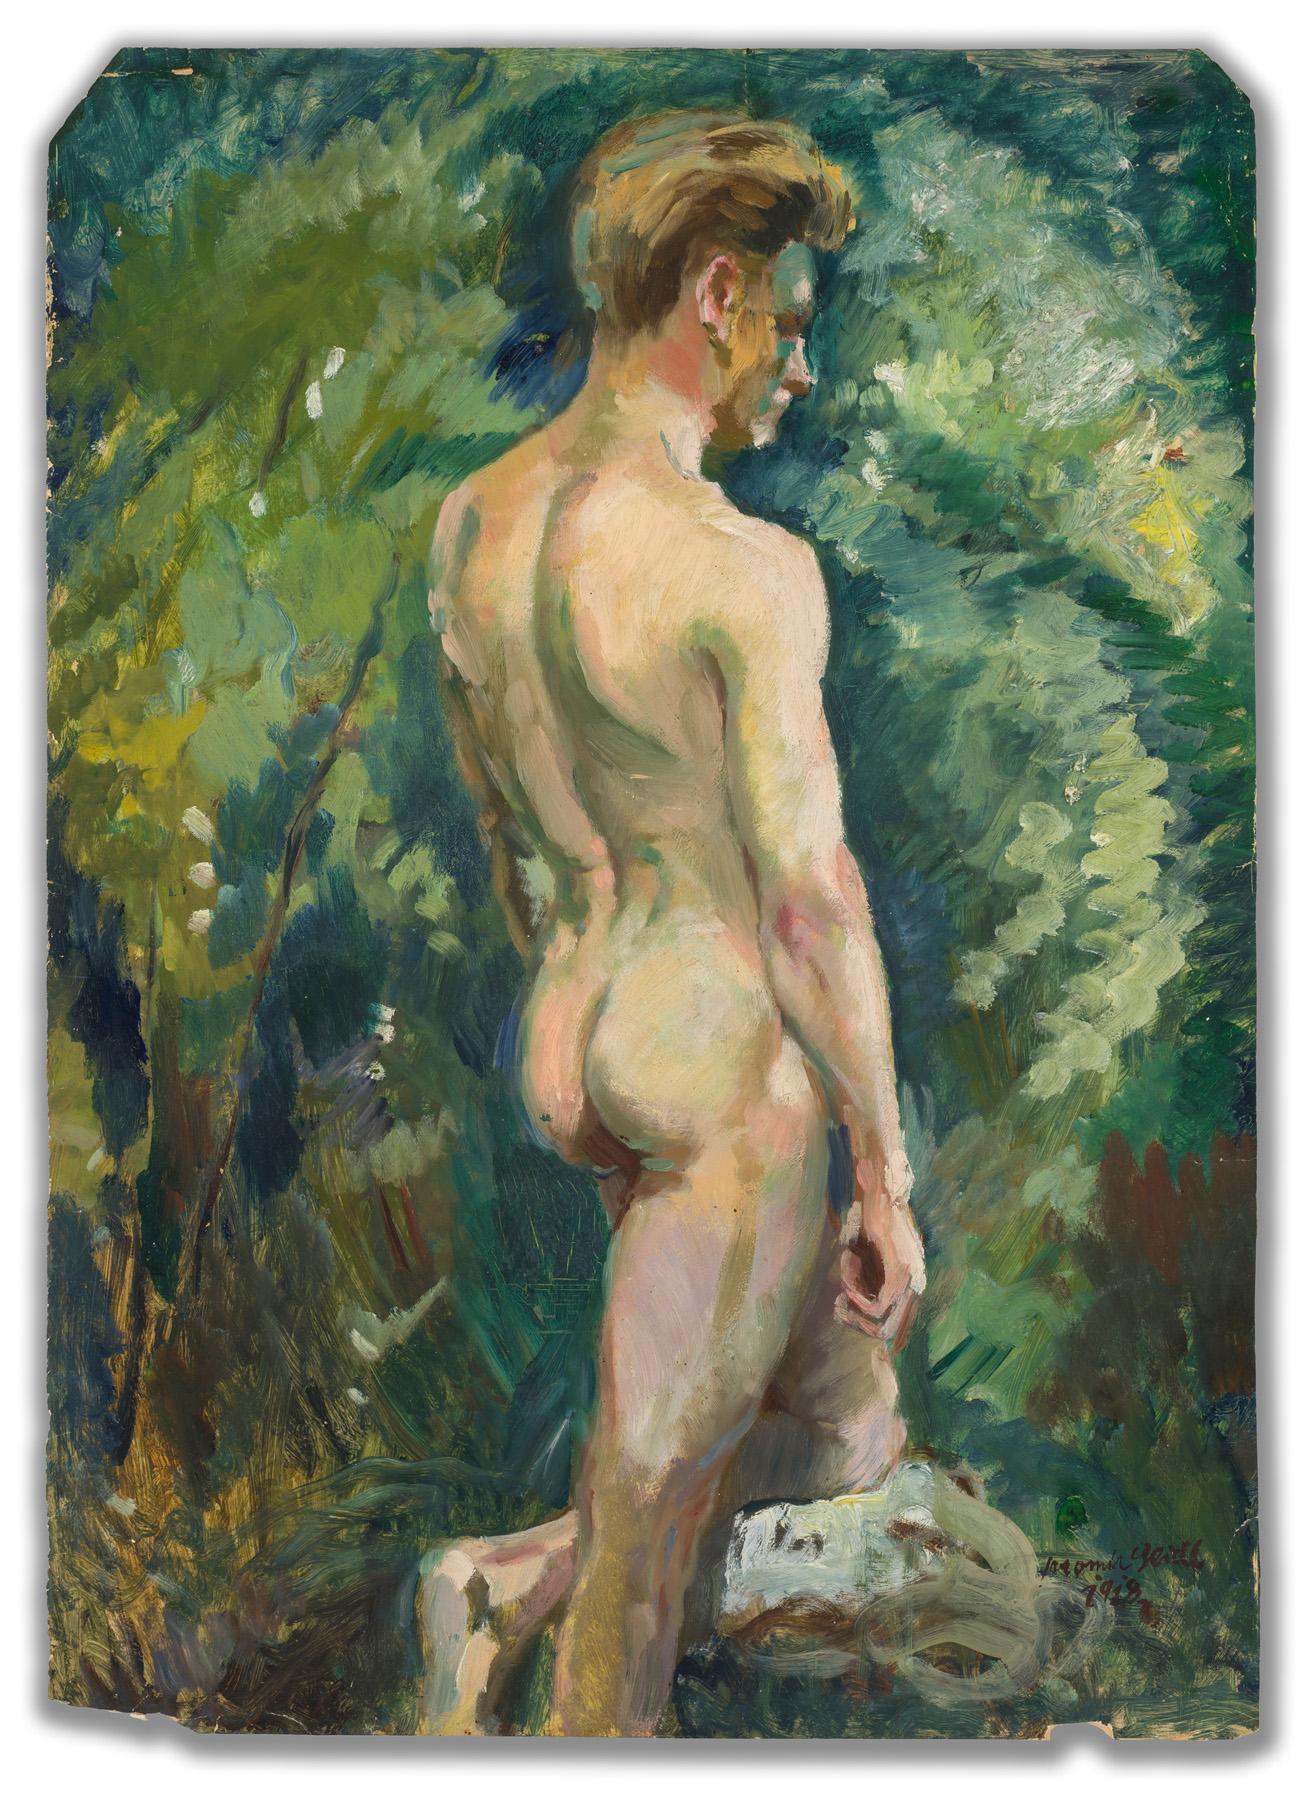 Männlicher Akt in einer Landschaft – Painting von Jaromir Seidl